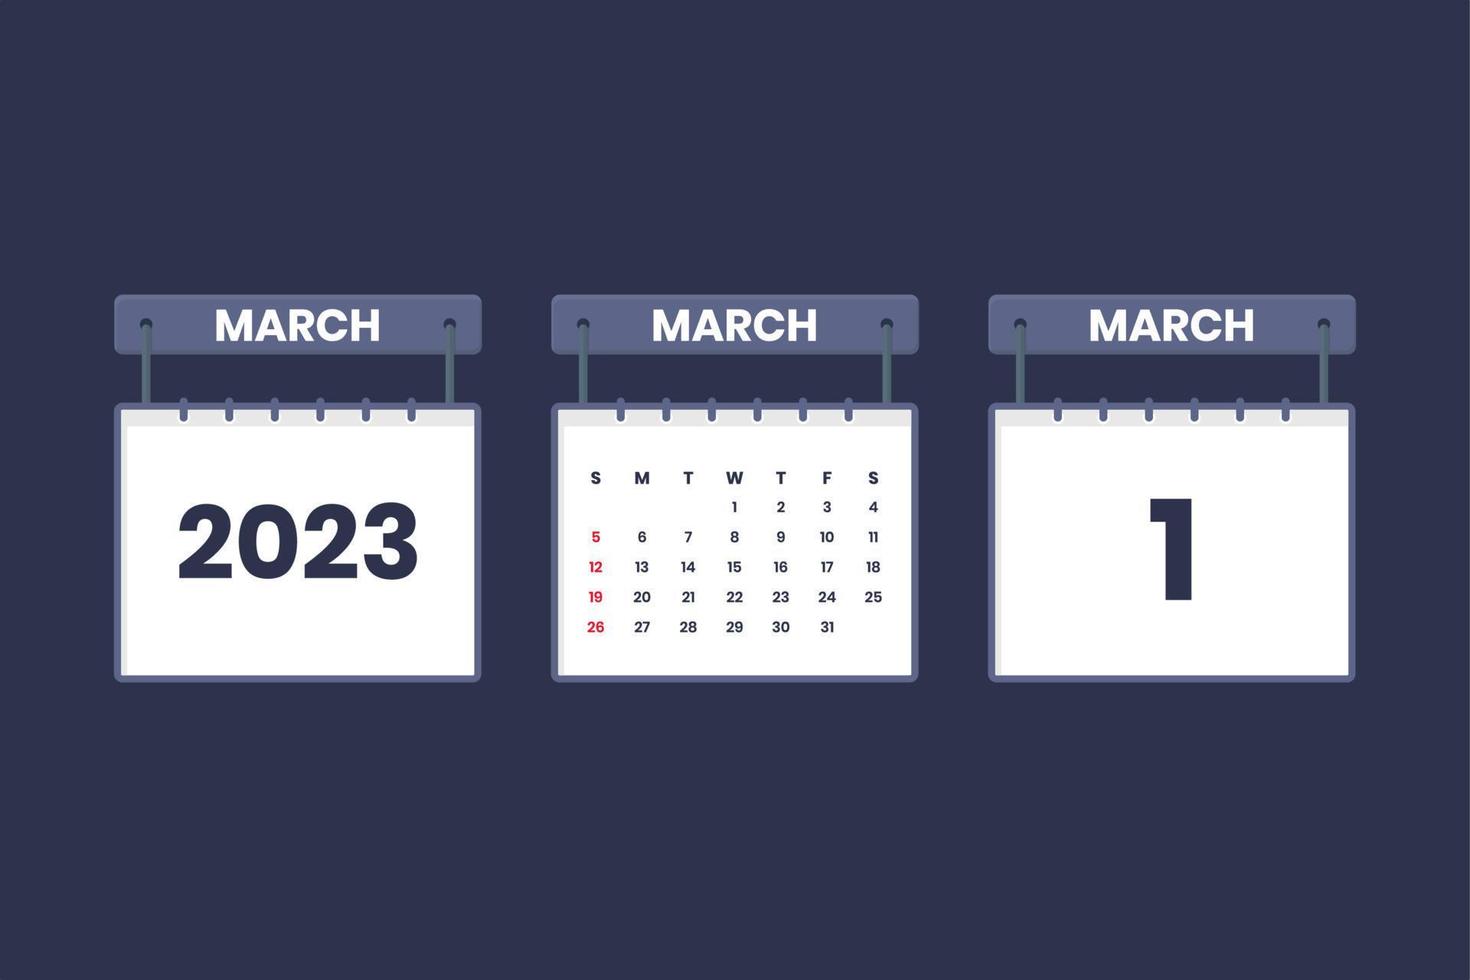 1 Mars 2023 kalender ikon för schema, utnämning, Viktig datum begrepp vektor